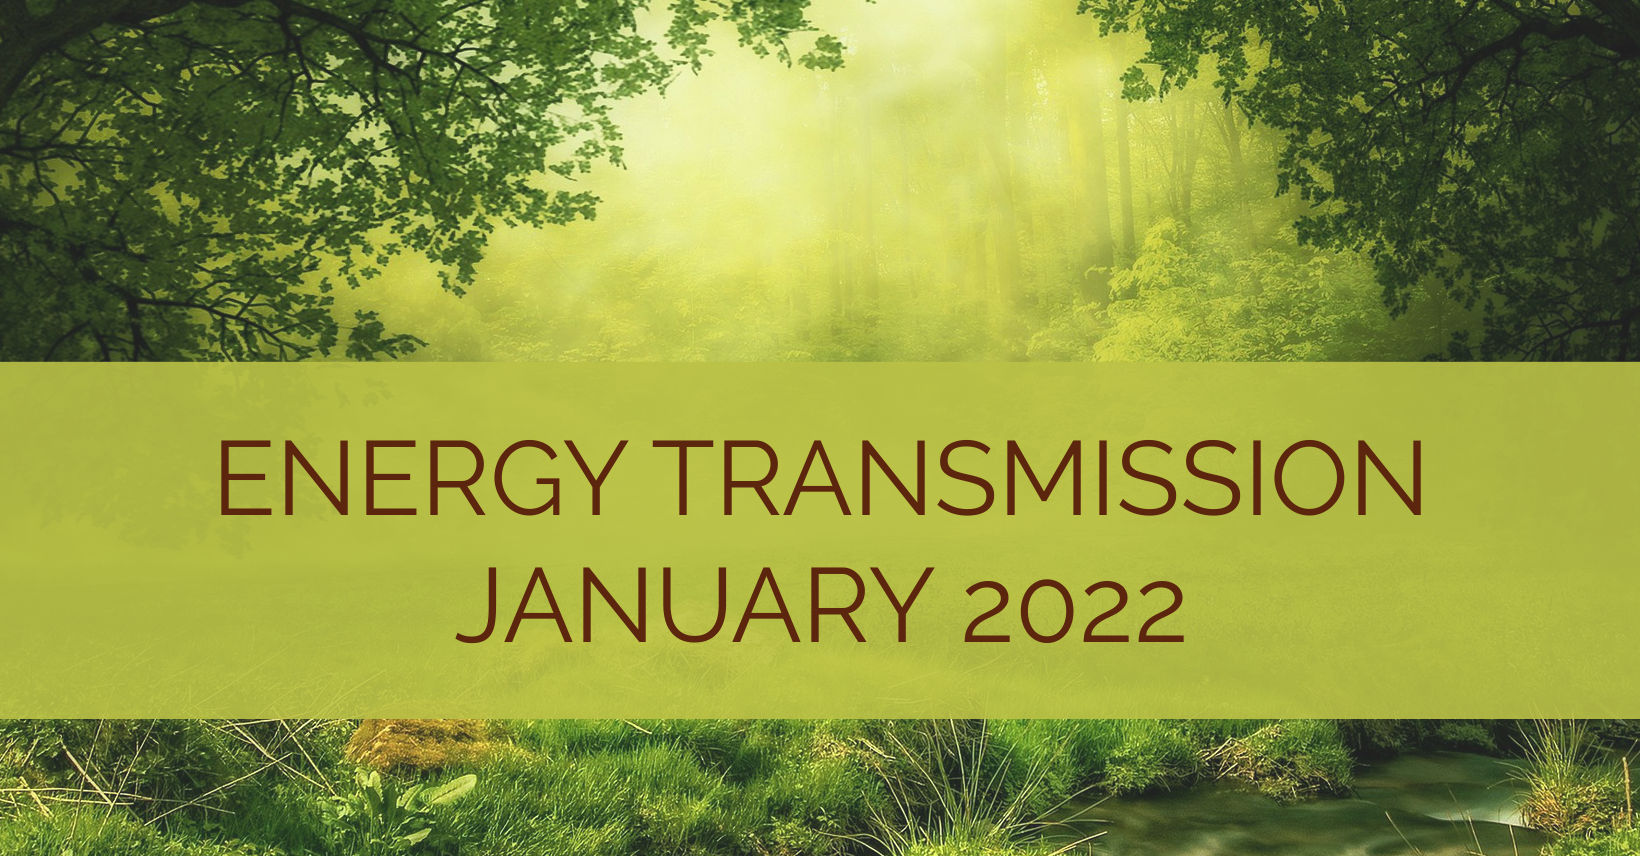 Energy Transmission January 2022